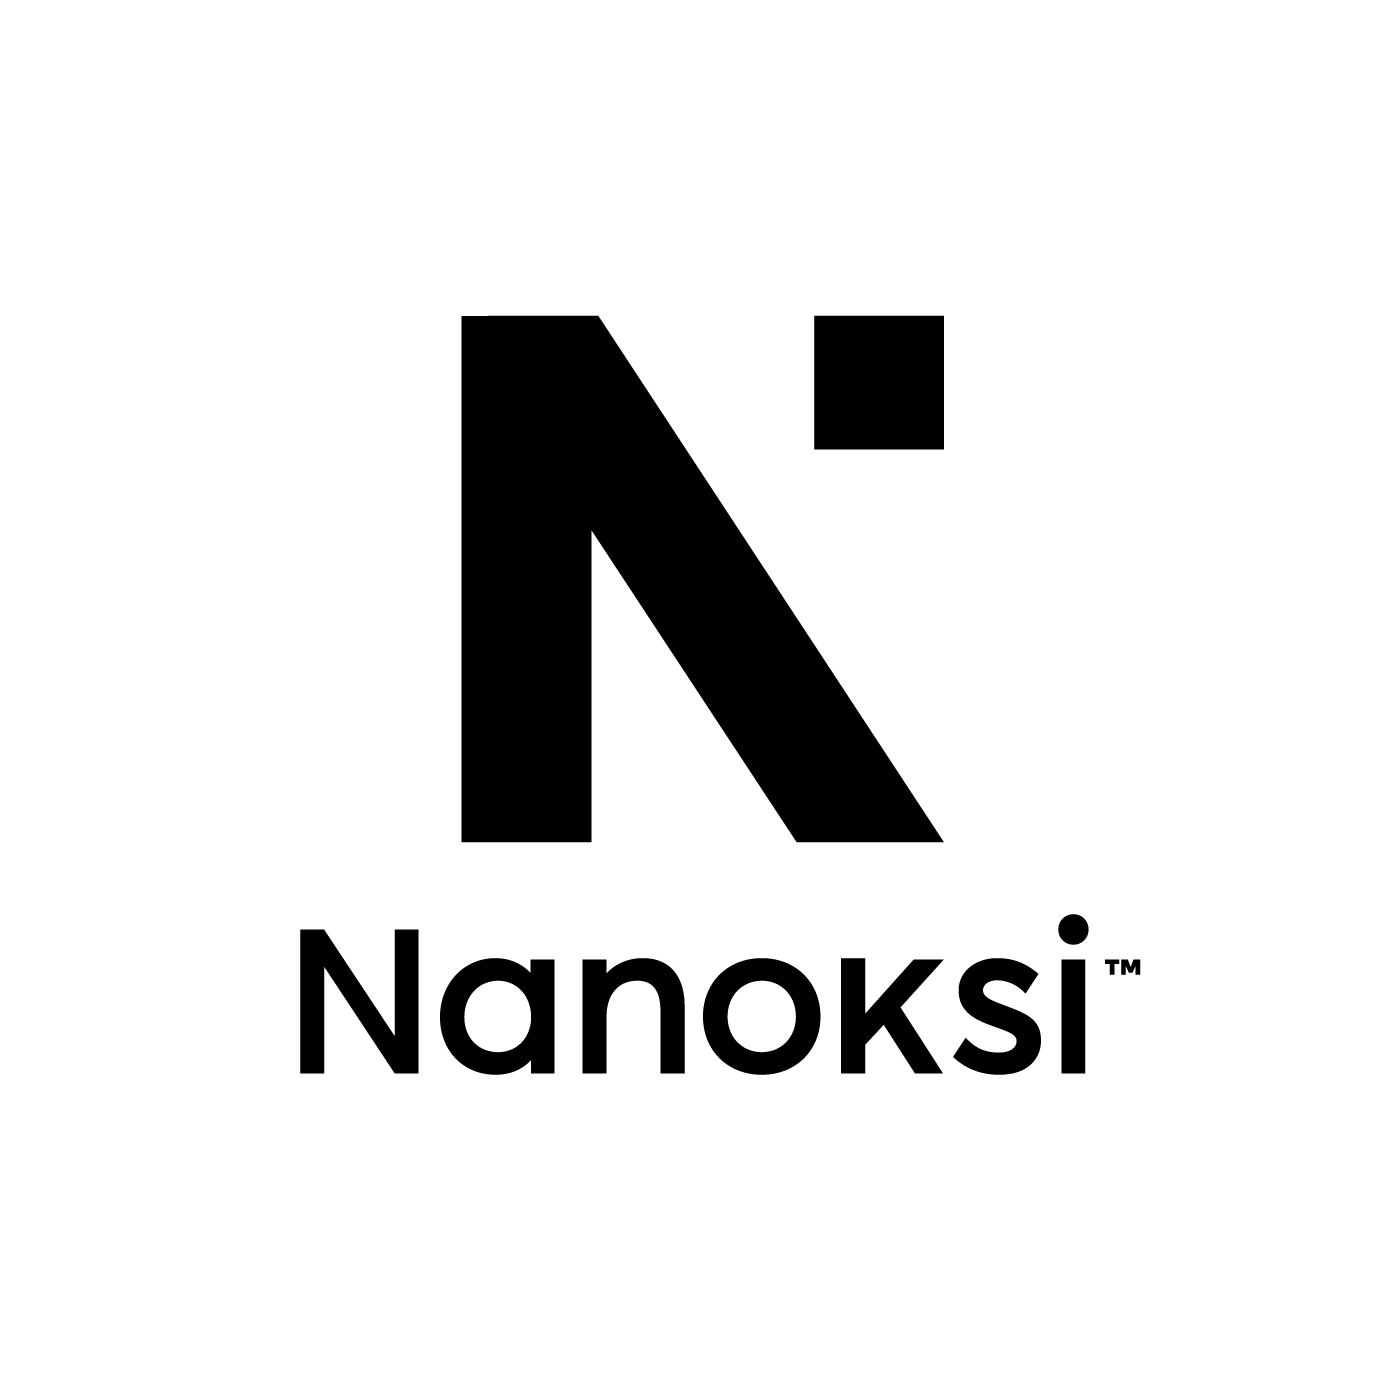 Nanoksin logo.